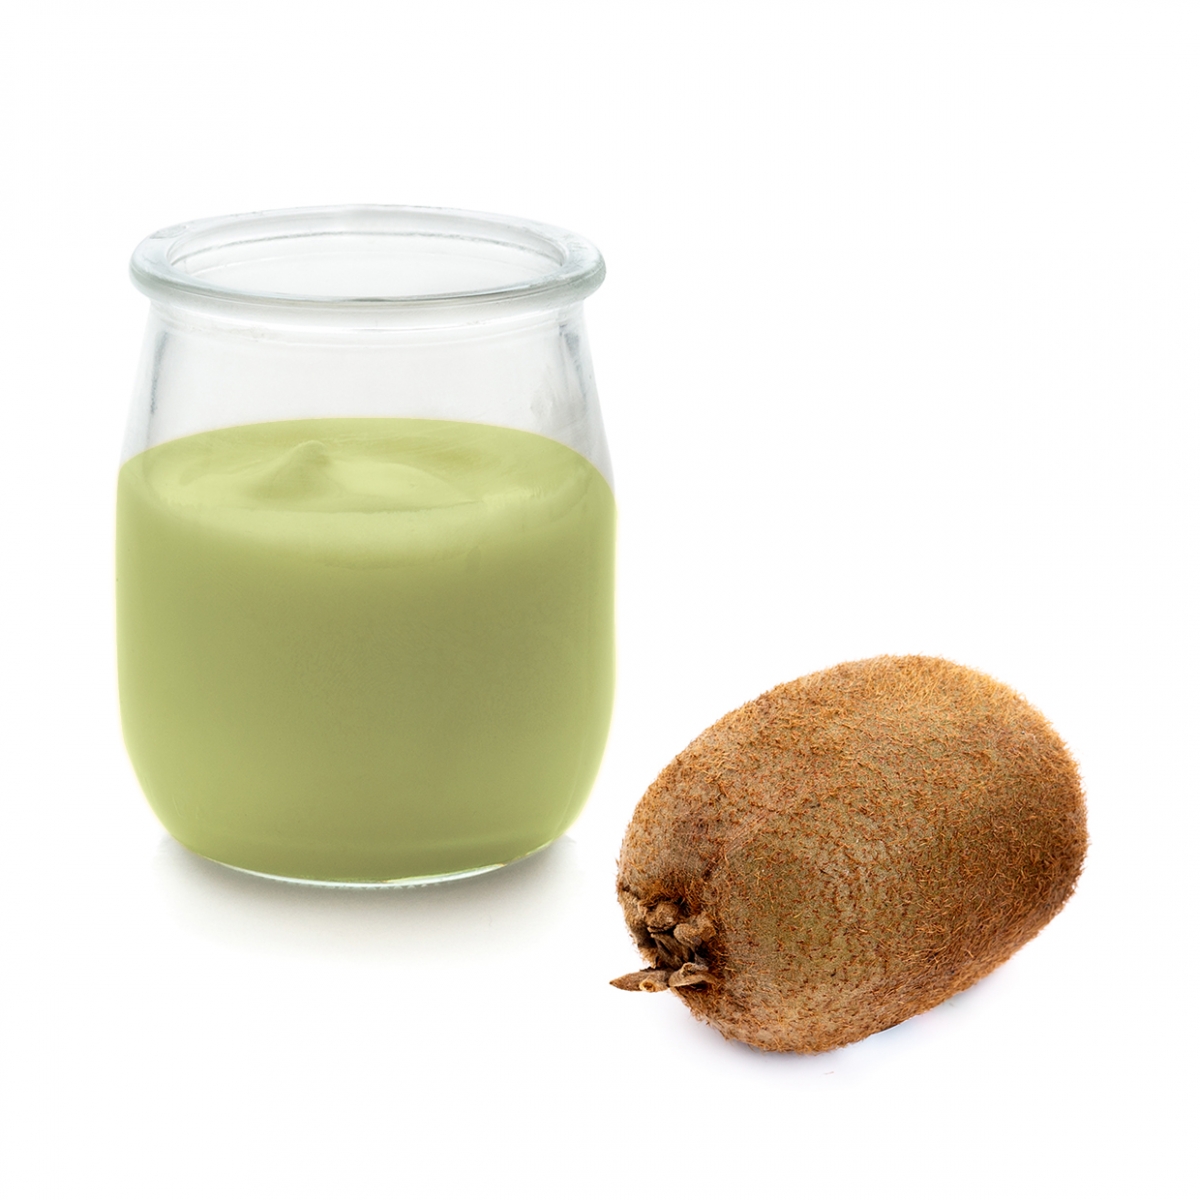 Imagen en la que se ve un yogur de kiwi